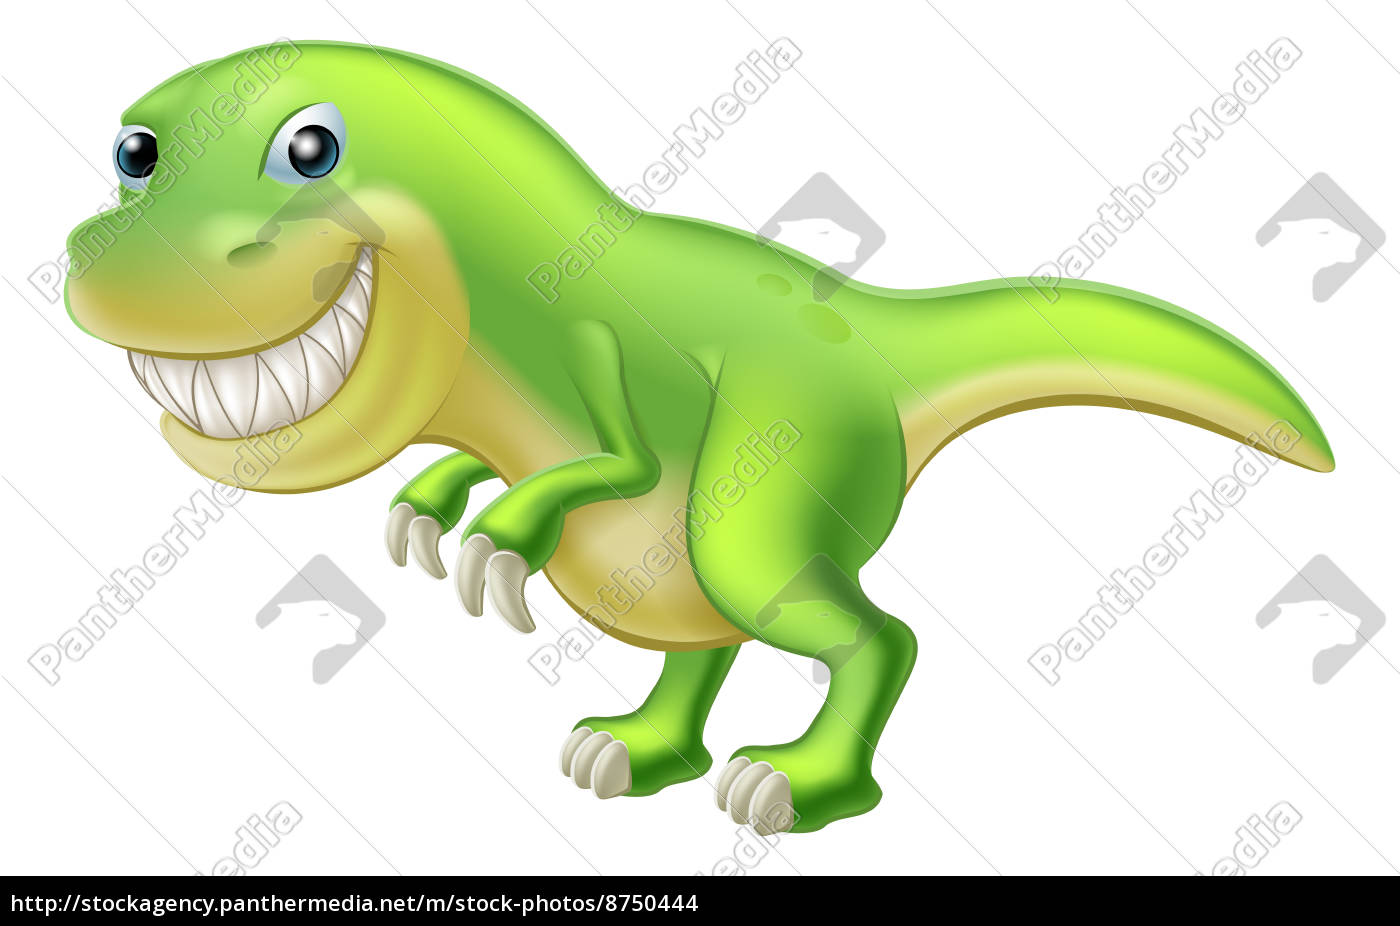 Dinossauro de desenho animado T Rex - Stockphoto #8750444